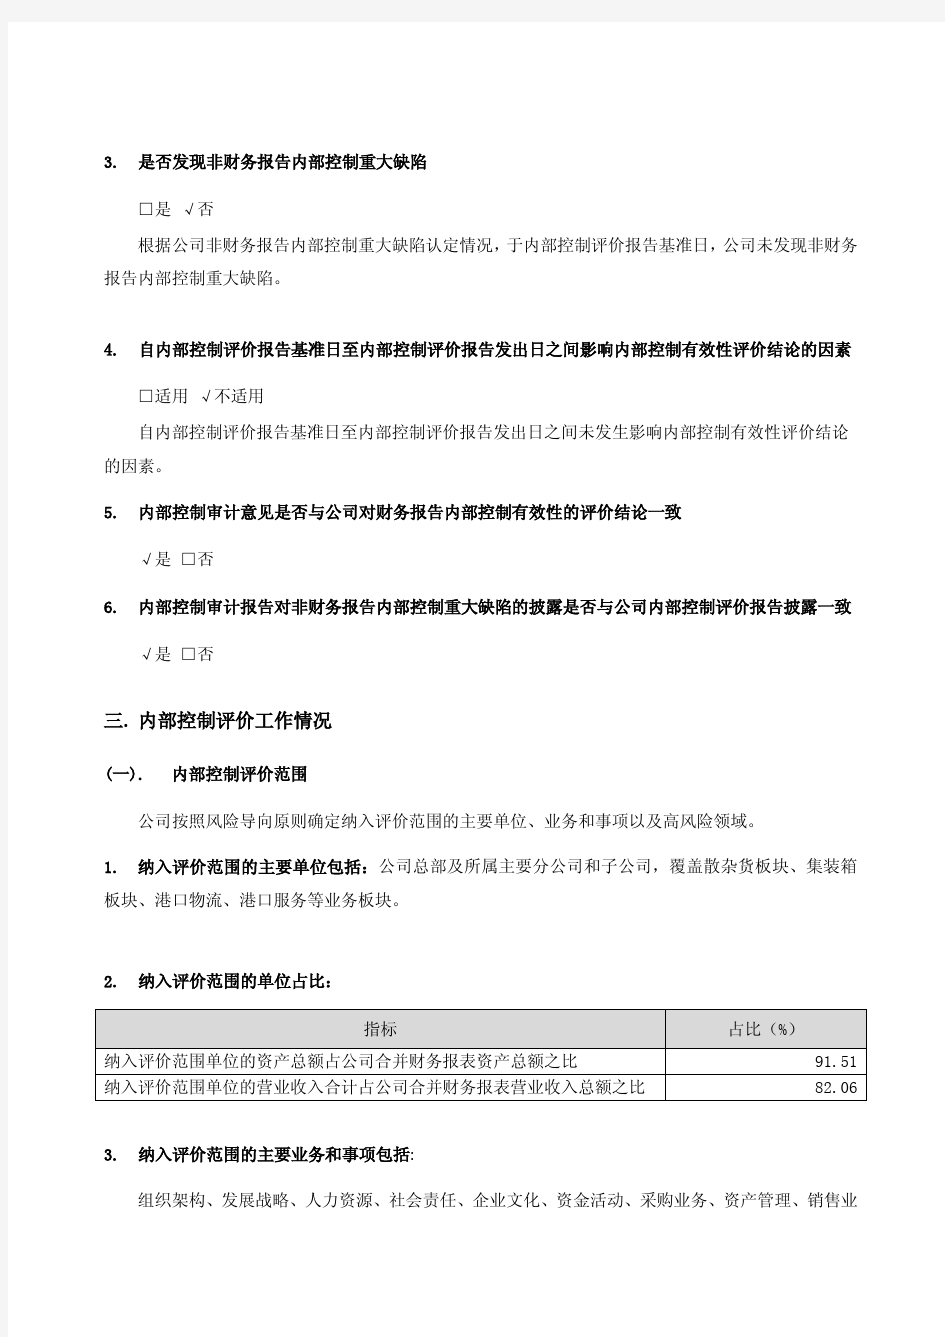 上港集团：2016年度内部控制评价报告